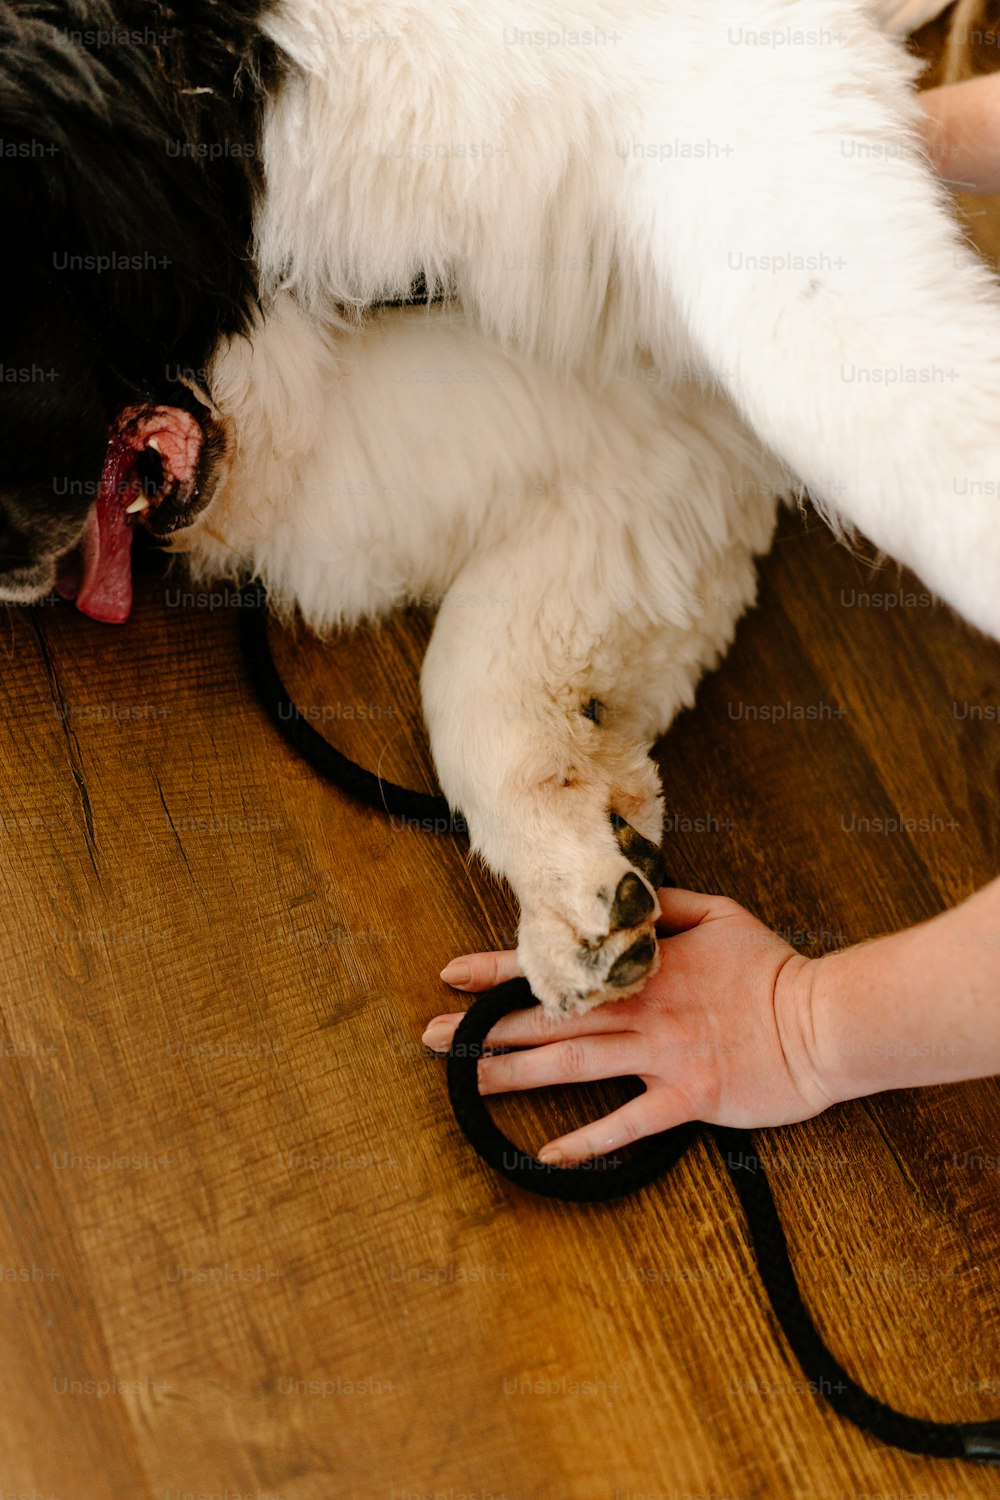 Un perro acostado en un piso de madera sostenido por la mano de una persona